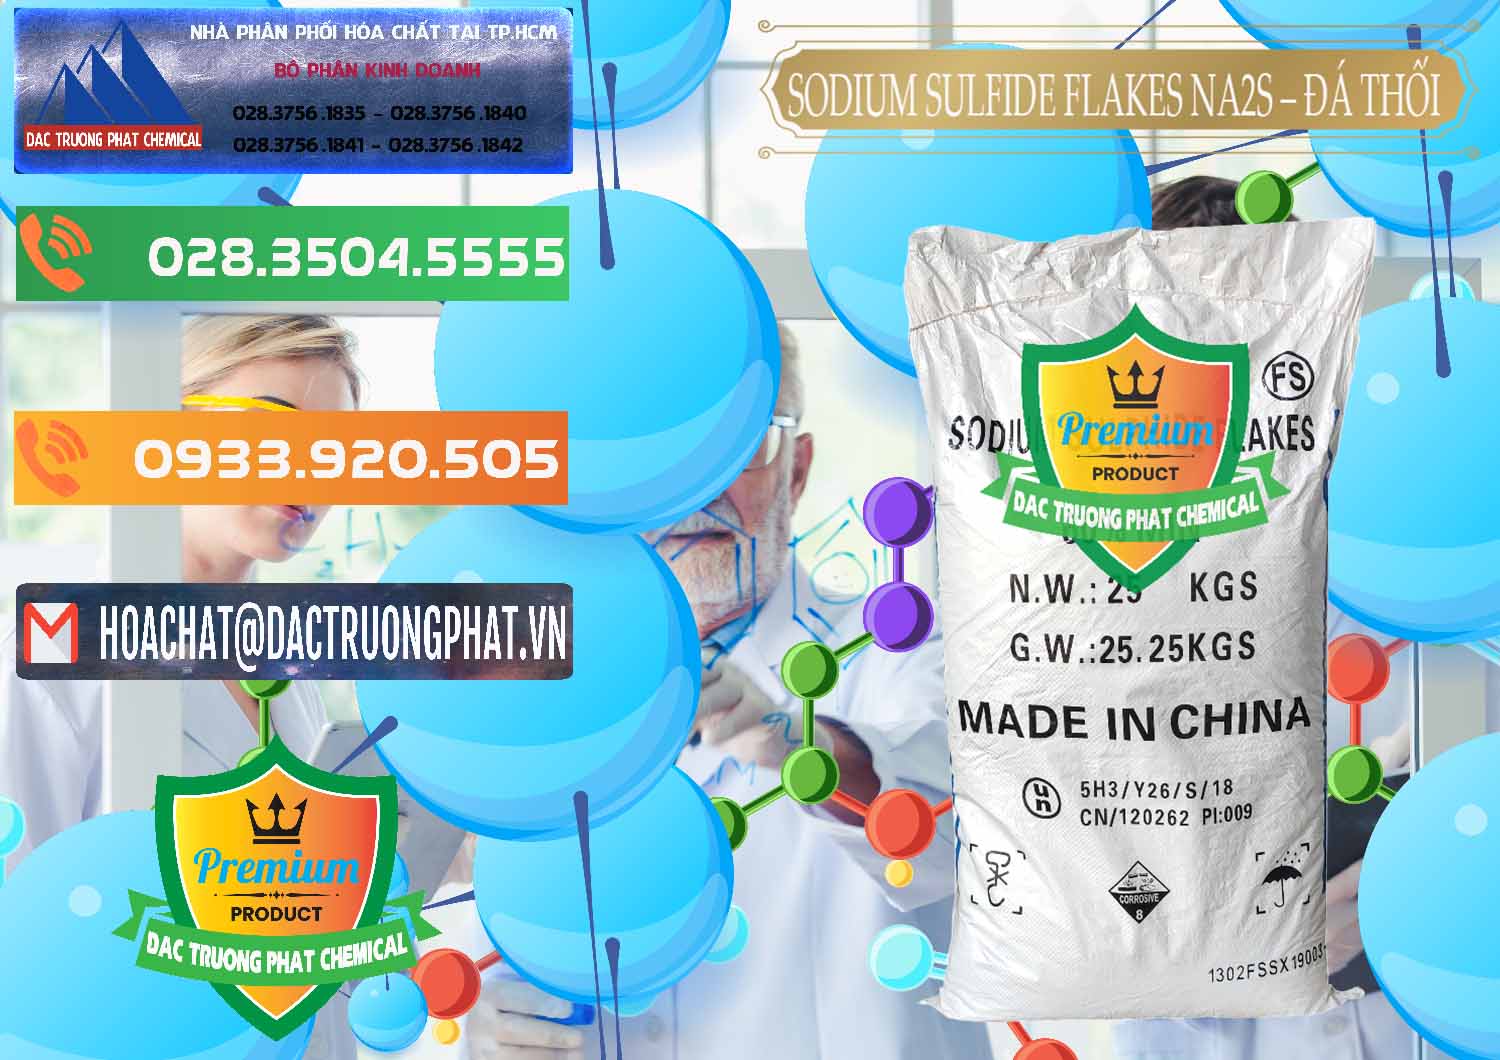 Nơi chuyên bán _ cung ứng Sodium Sulfide Flakes NA2S – Đá Thối Đỏ Trung Quốc China - 0150 - Công ty nhập khẩu & phân phối hóa chất tại TP.HCM - hoachatxulynuoc.com.vn